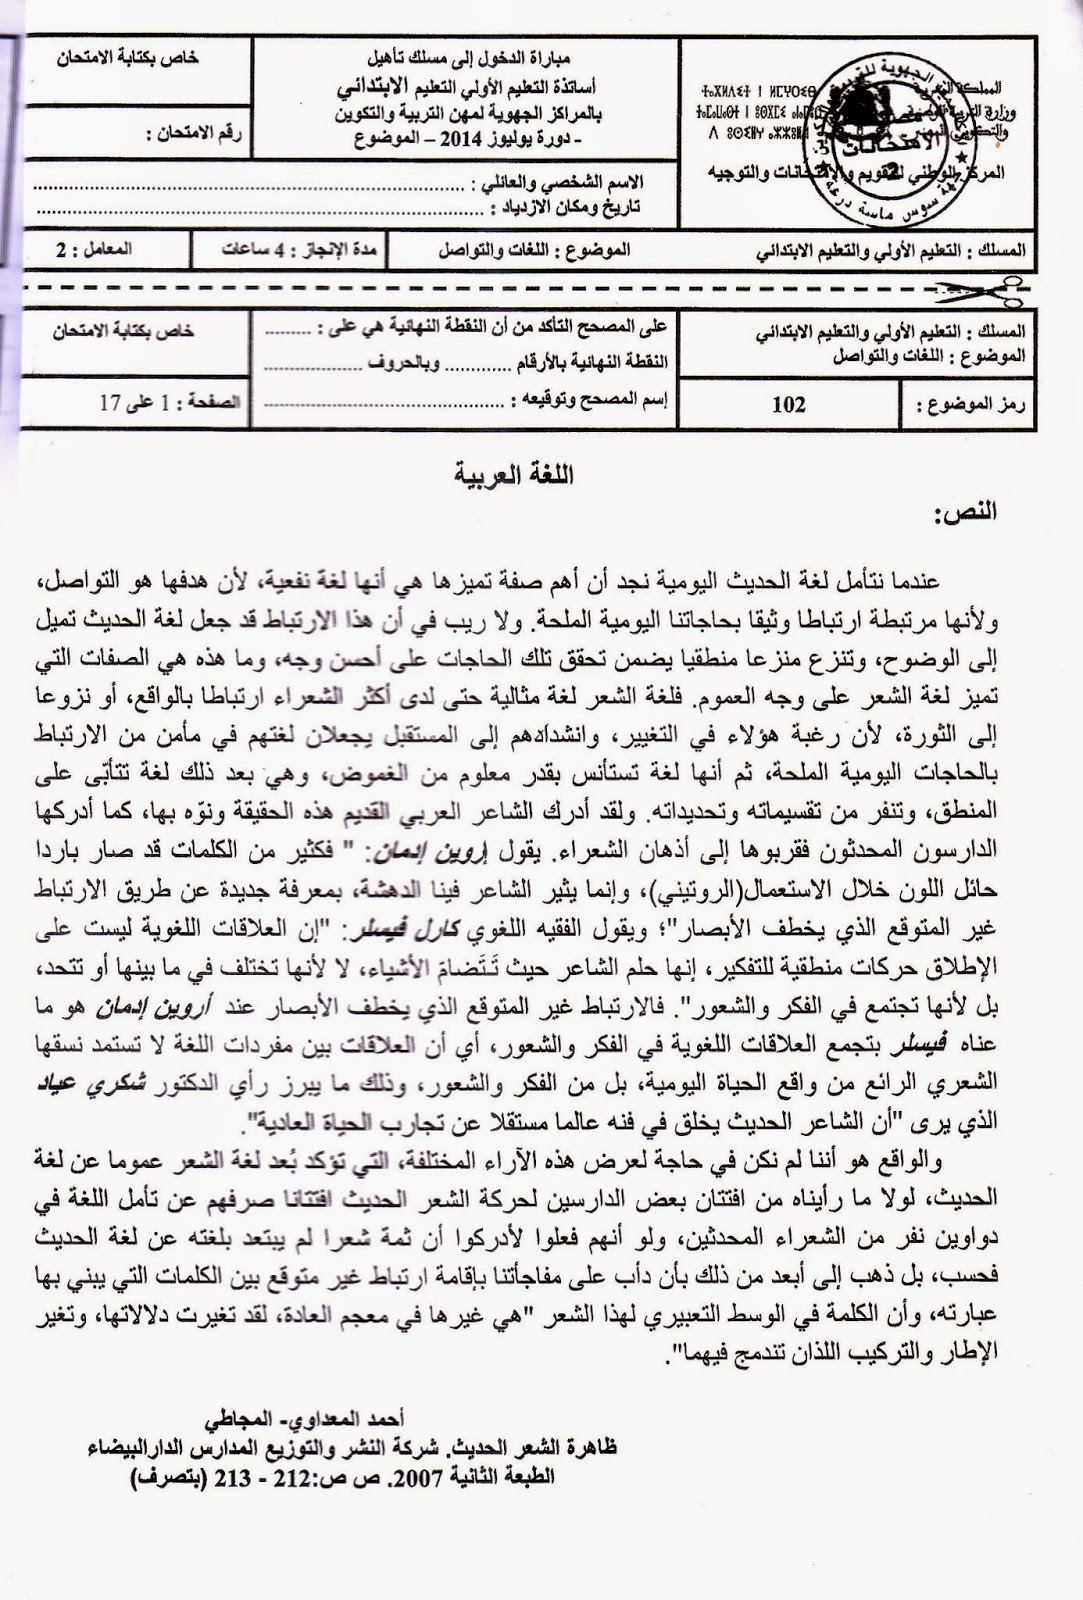  الاختبار الكتابي لولوج المراكز الجهوية لمهن التربية والتكوين - دورة يوليوز 2014 مادة : اللغة العربية A1